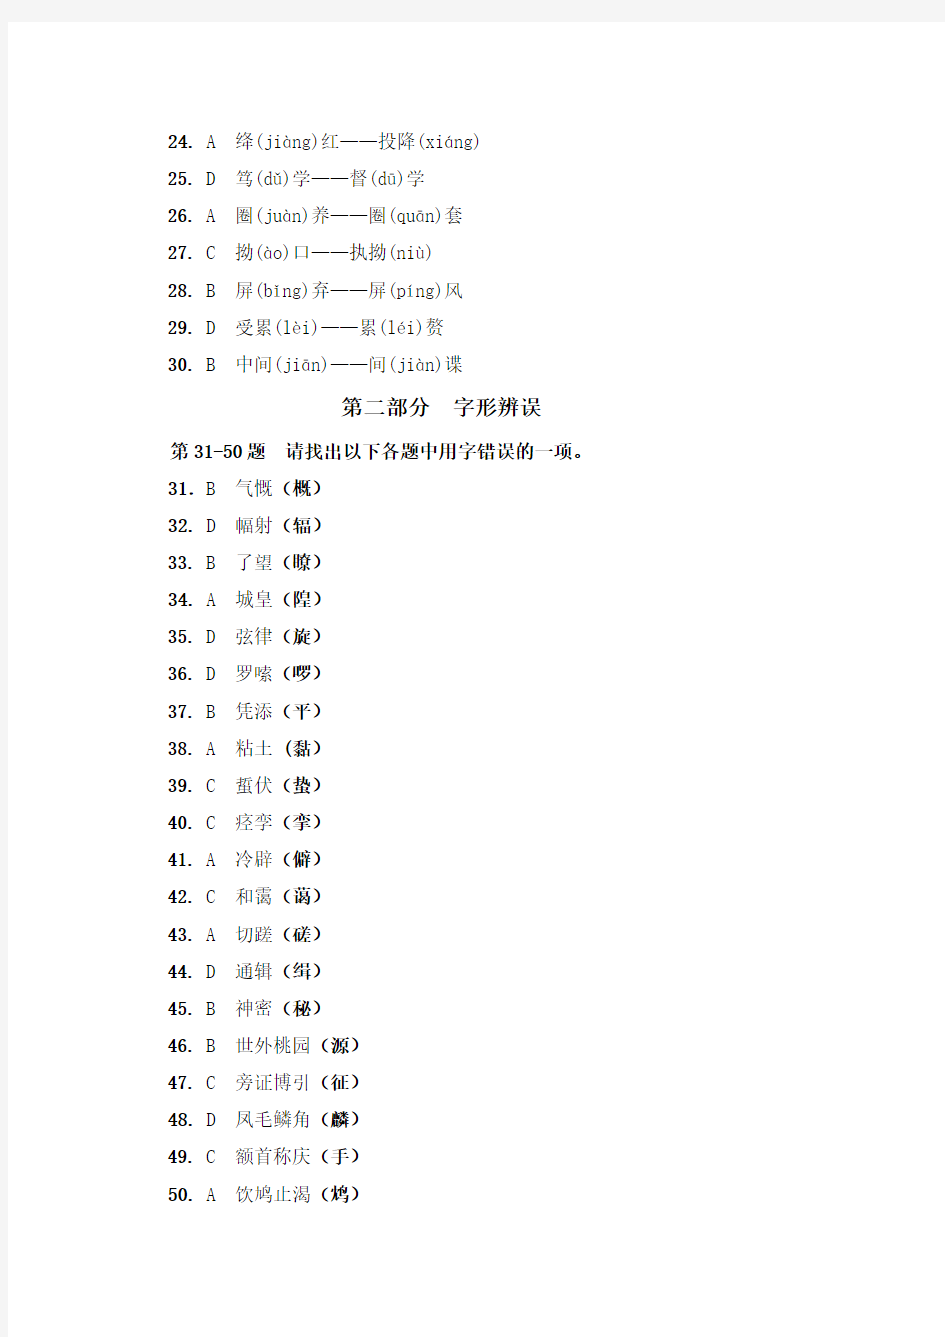 汉字应用水平测试模拟考试答案